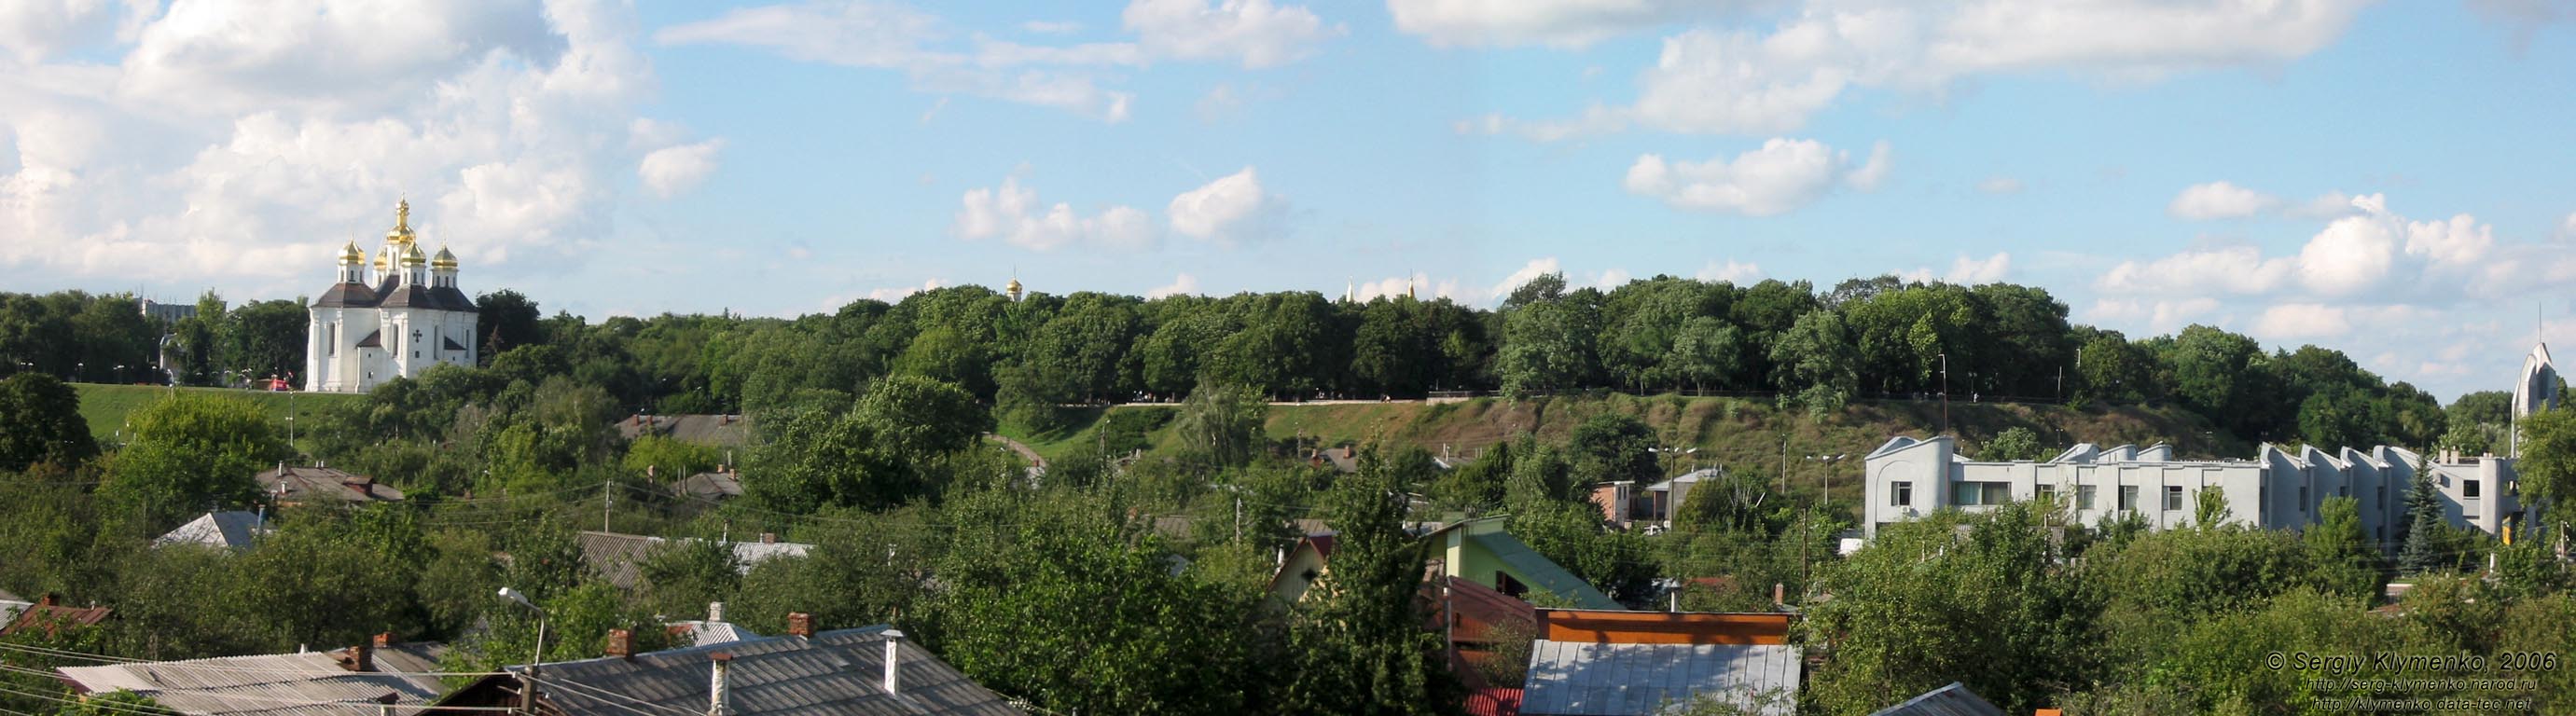 Чернигов. Фото. Вид на Детинец со стороны р. Десна. Панорама ~120°.